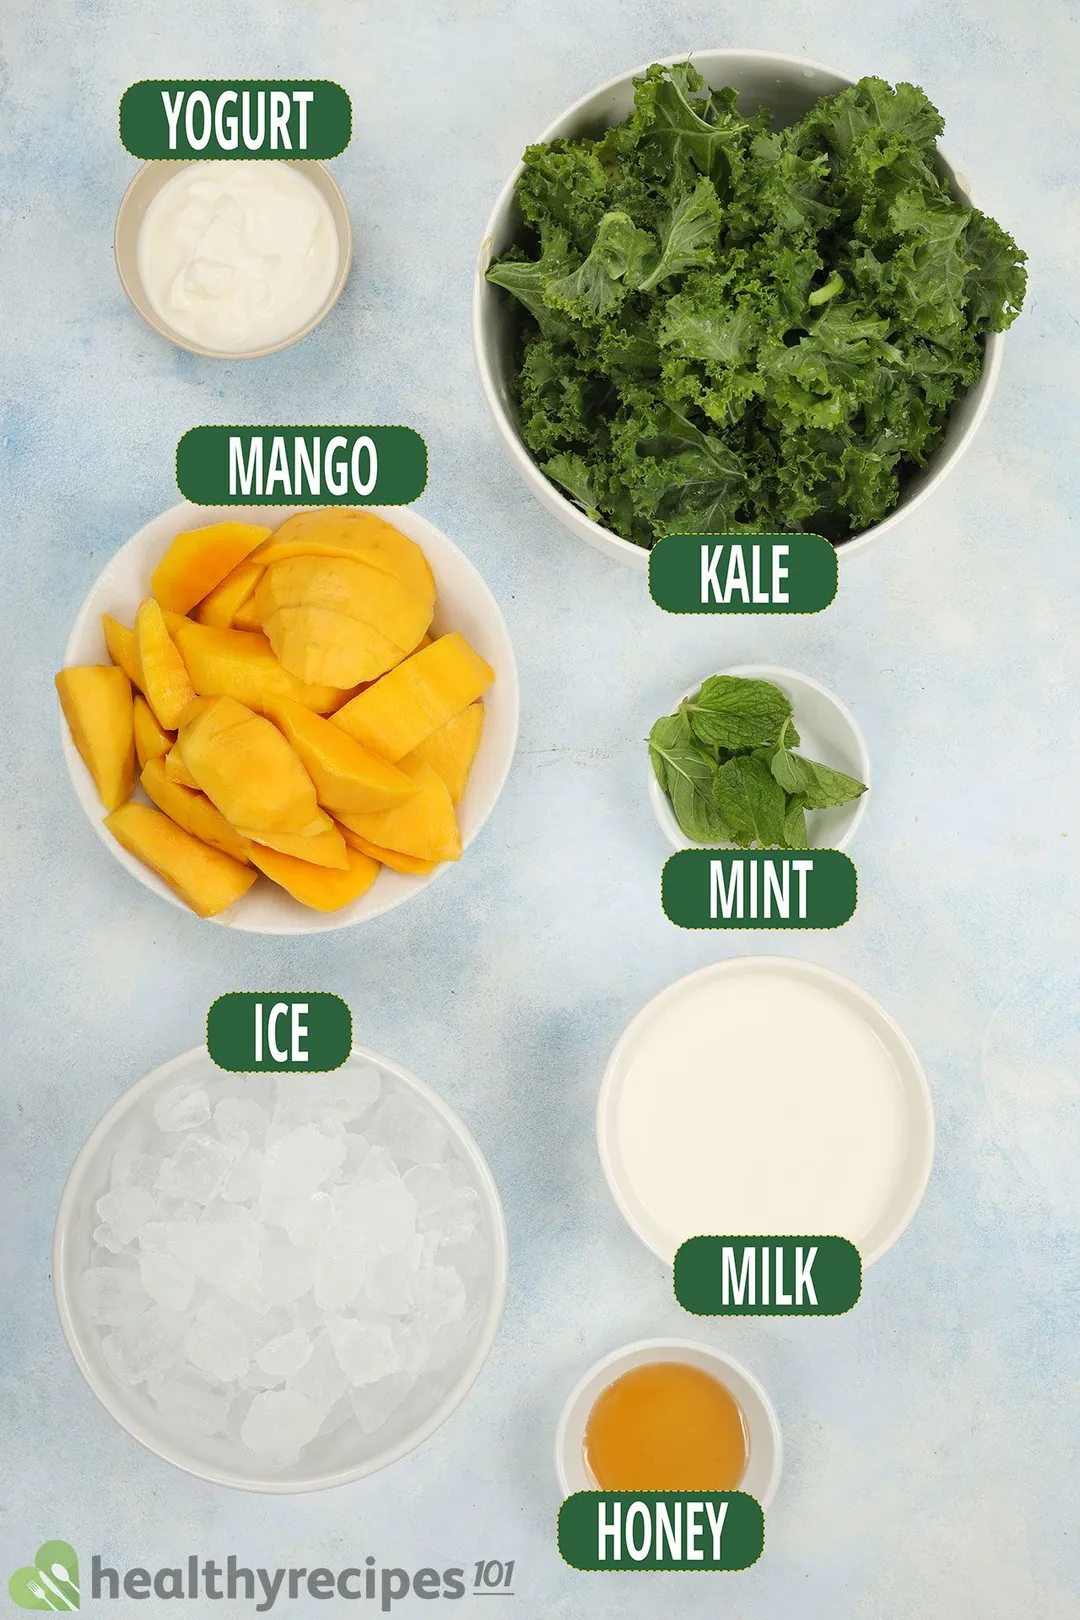 6 ingredient bowls for mango kale smoothie